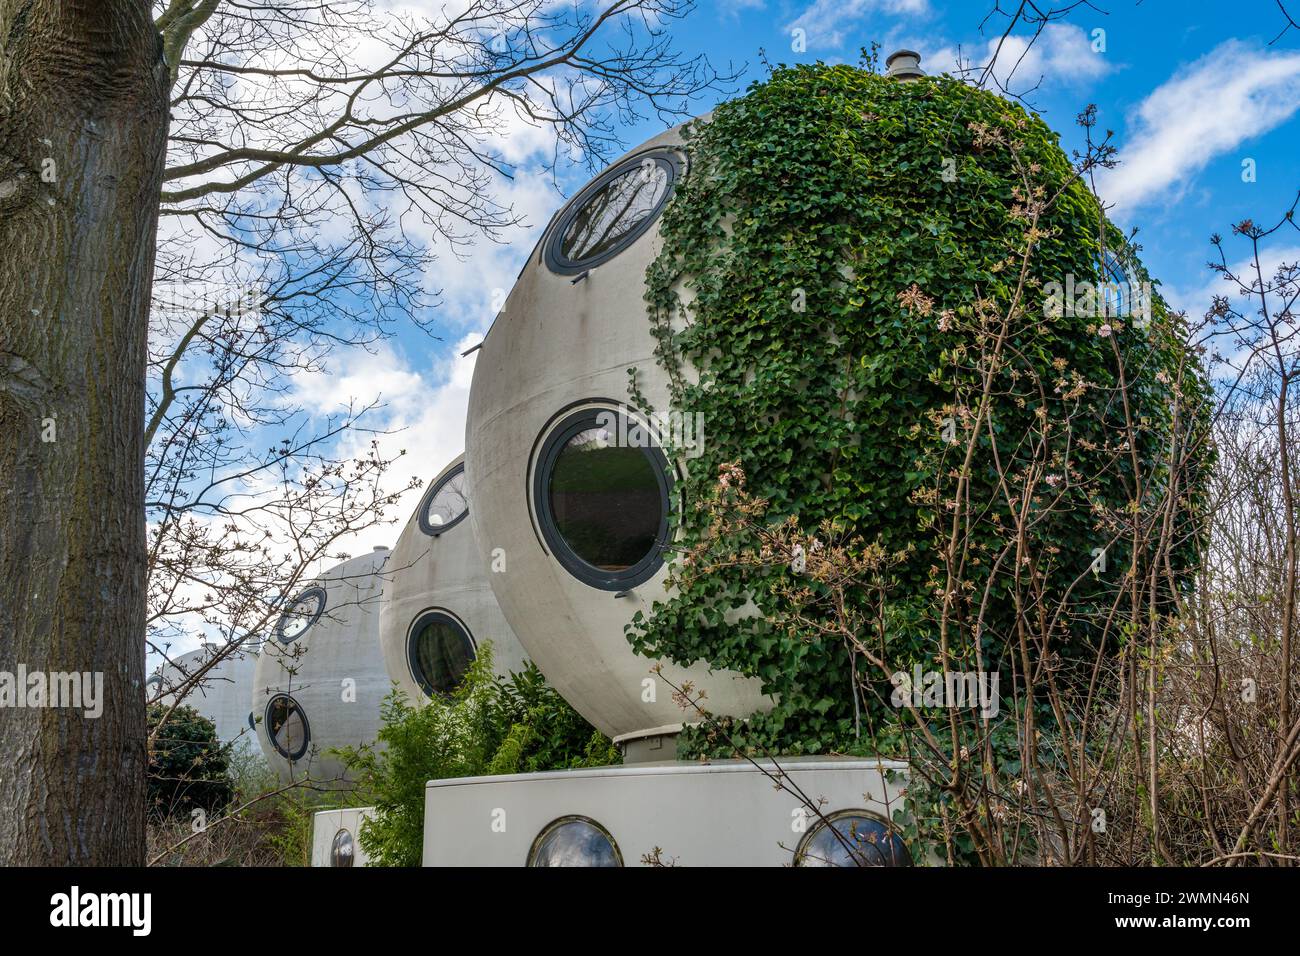 Den Bosch, pays-Bas, 25.02.2024, maisons sphériques expérimentales connues sous le nom de Bolwoningen, conçues par l'artiste néerlandais Dries Kreijkamp dans les années 1970 Banque D'Images